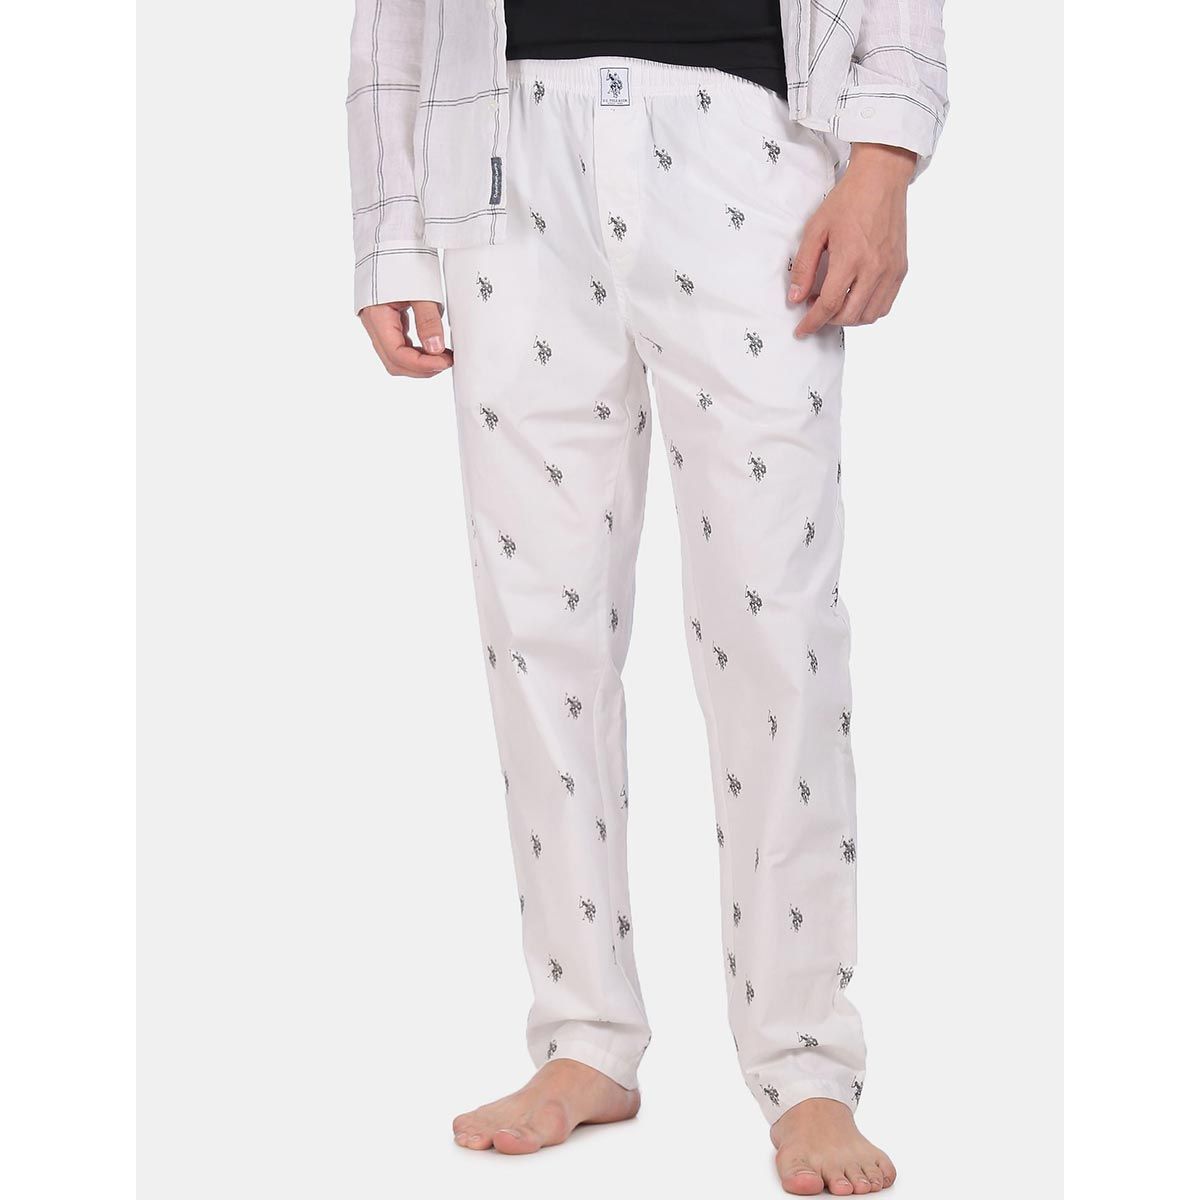 US POLO ASSN Men Pyjama  Buy US POLO ASSN Men Pyjama Online at Best  Prices in India  Flipkartcom